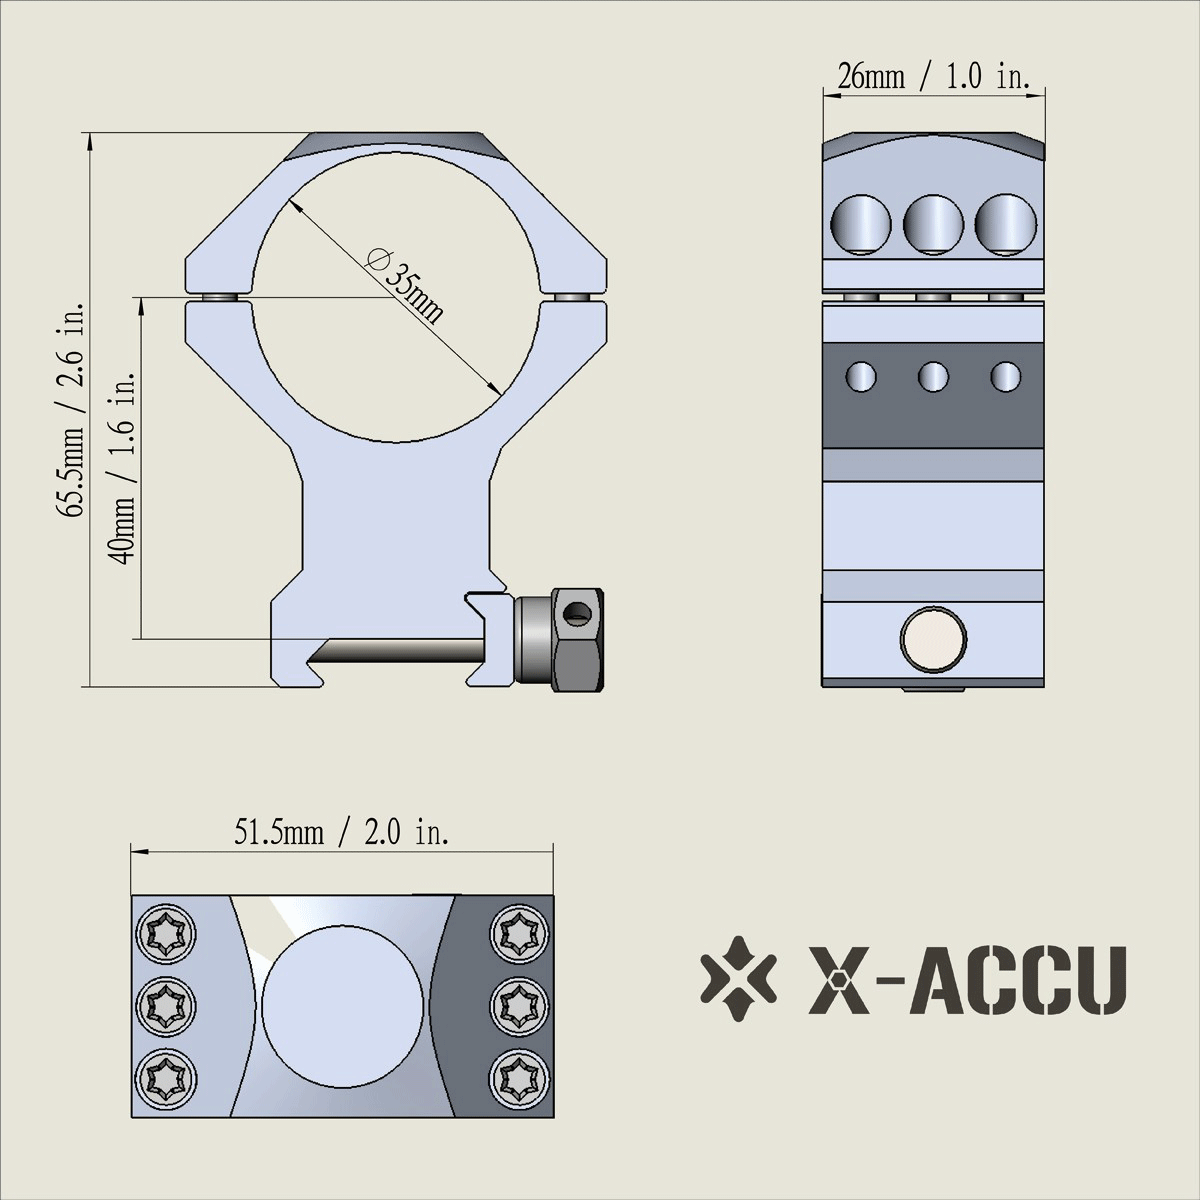 X-ACCU 35mm High Profile Scope Rings